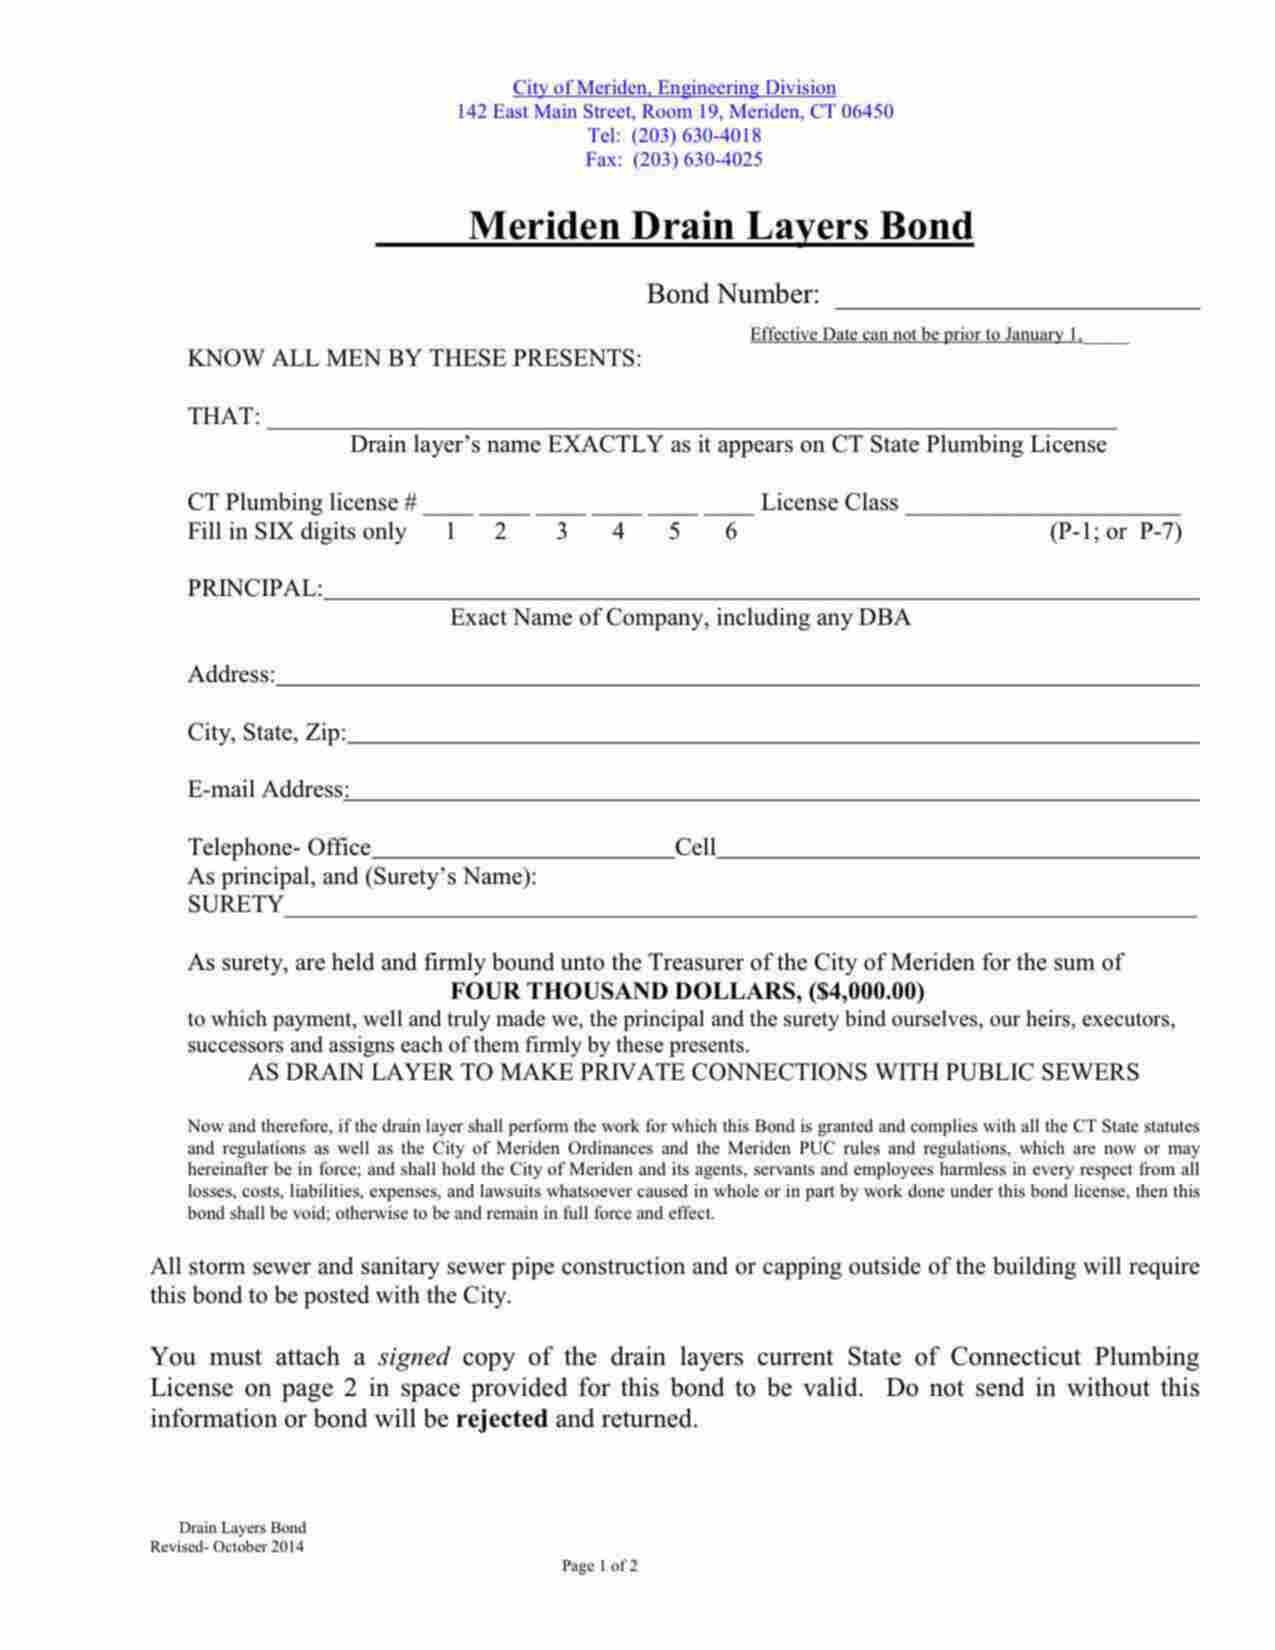 Connecticut Drain Layer - P-7 License Bond Form